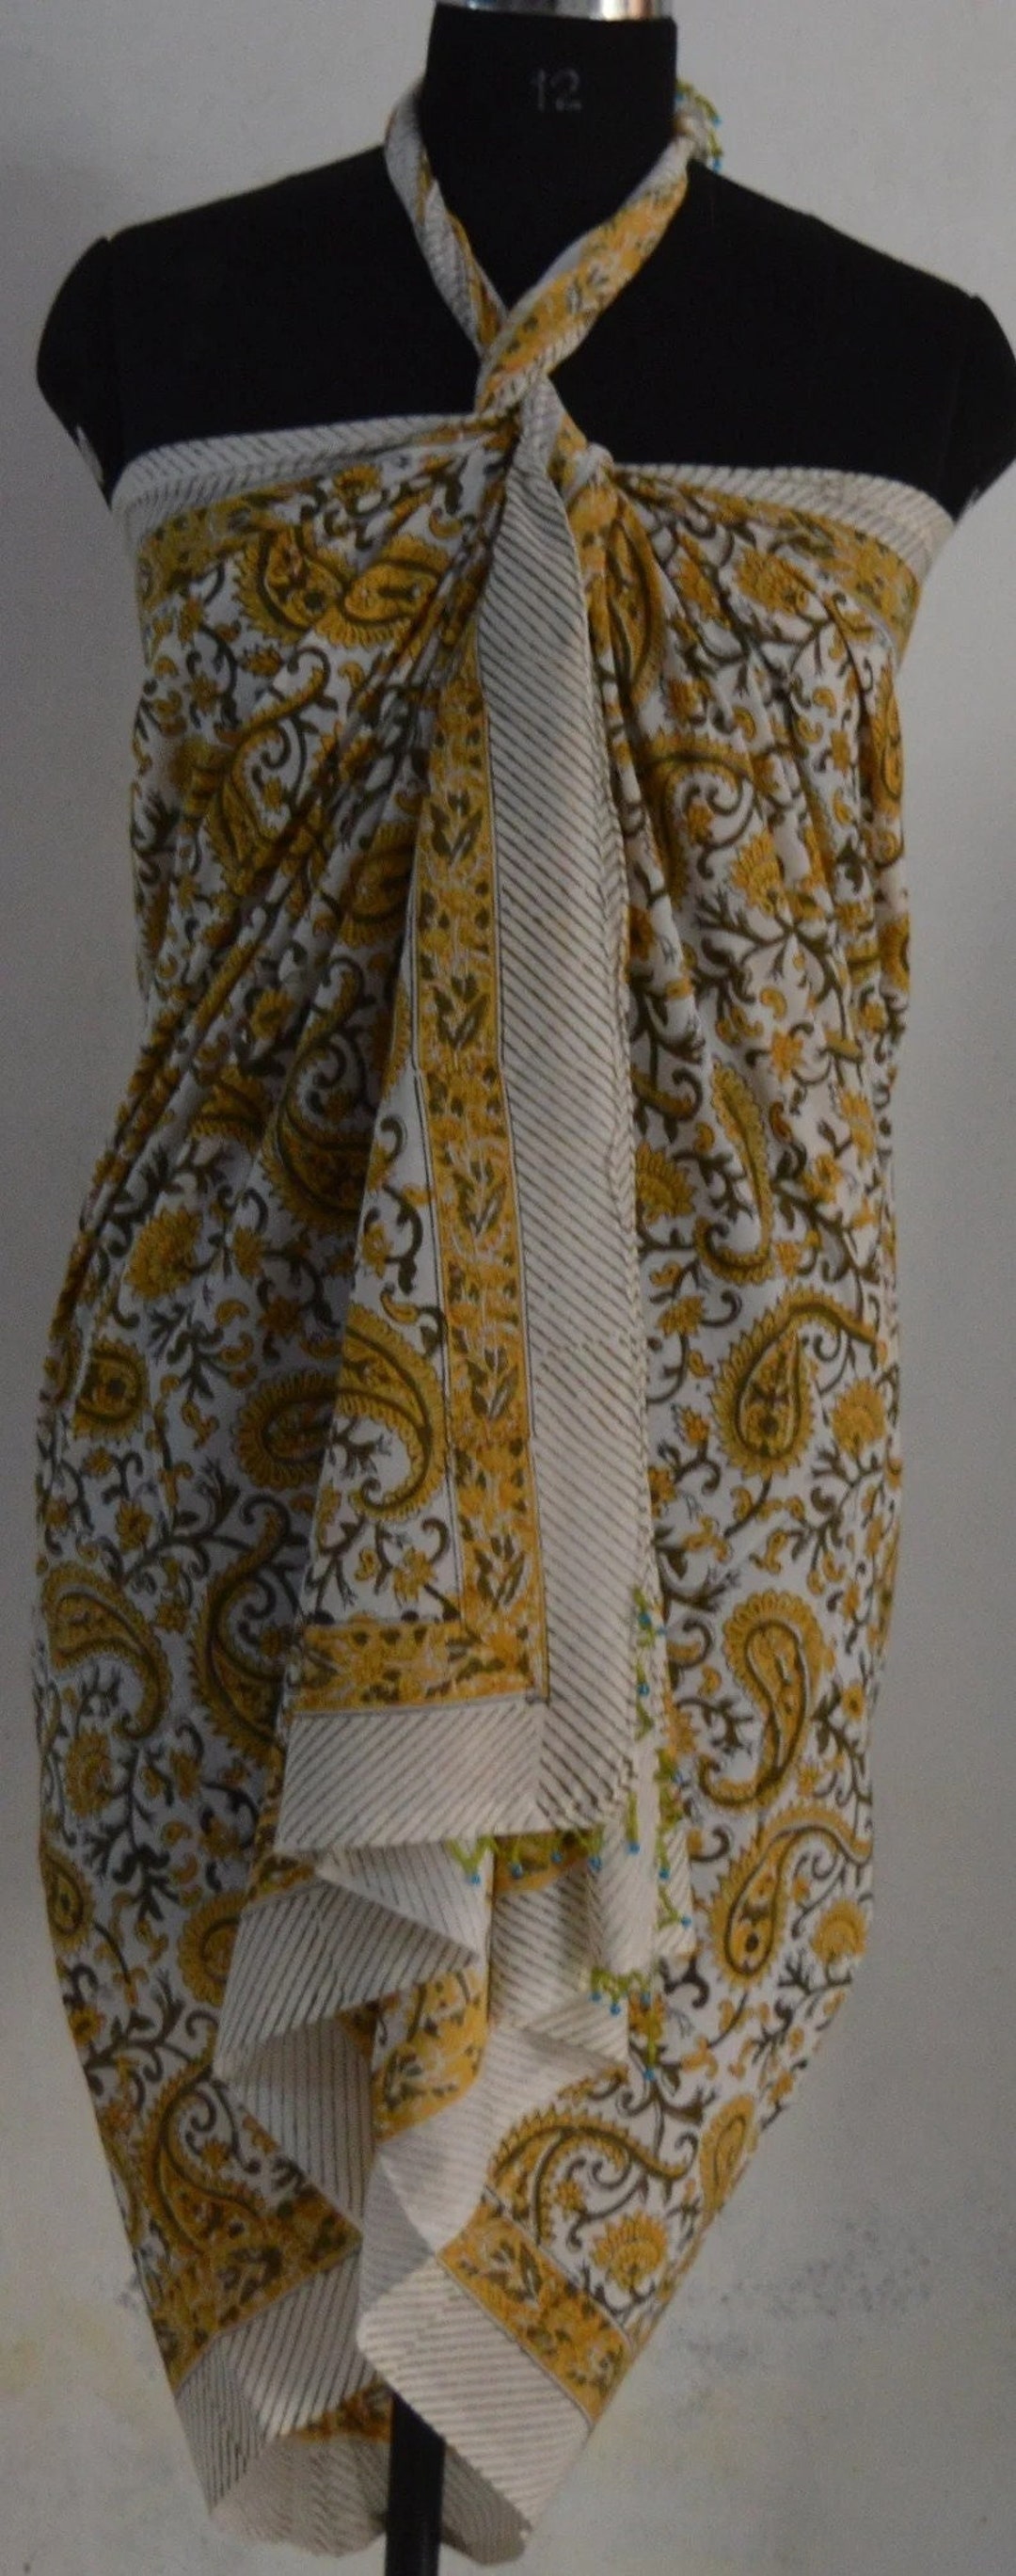 Sarang Cotton Hand Block Print Top / Dress L (42)